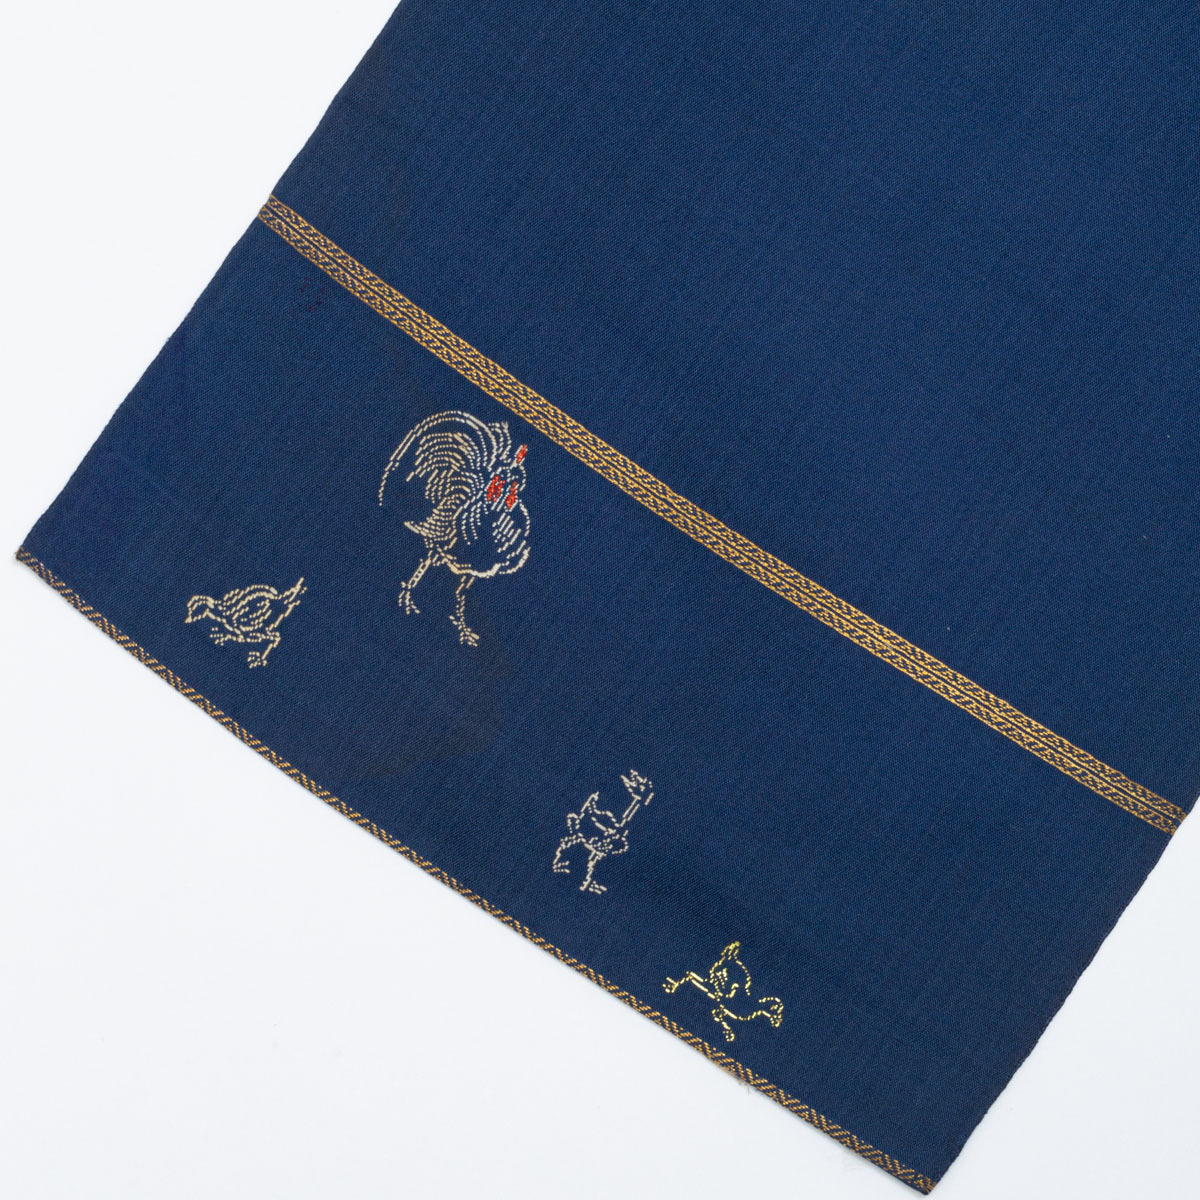 龍村平蔵 袋帯 鶏売りと町人の図 風俗画 濃紺 西陣織 正絹の画像9